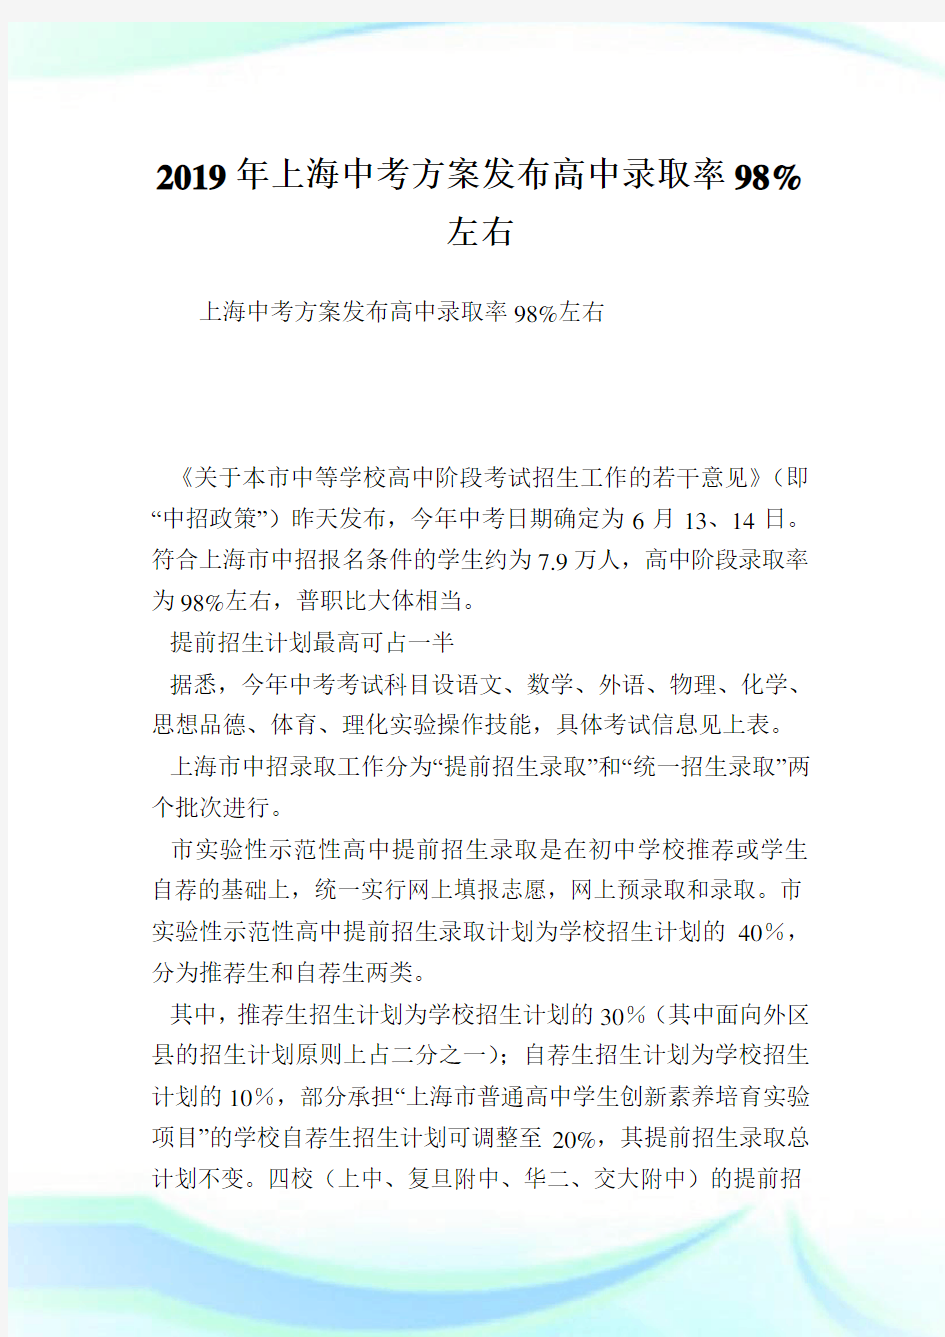 上海中考方案发布高中录取率98%左右.doc